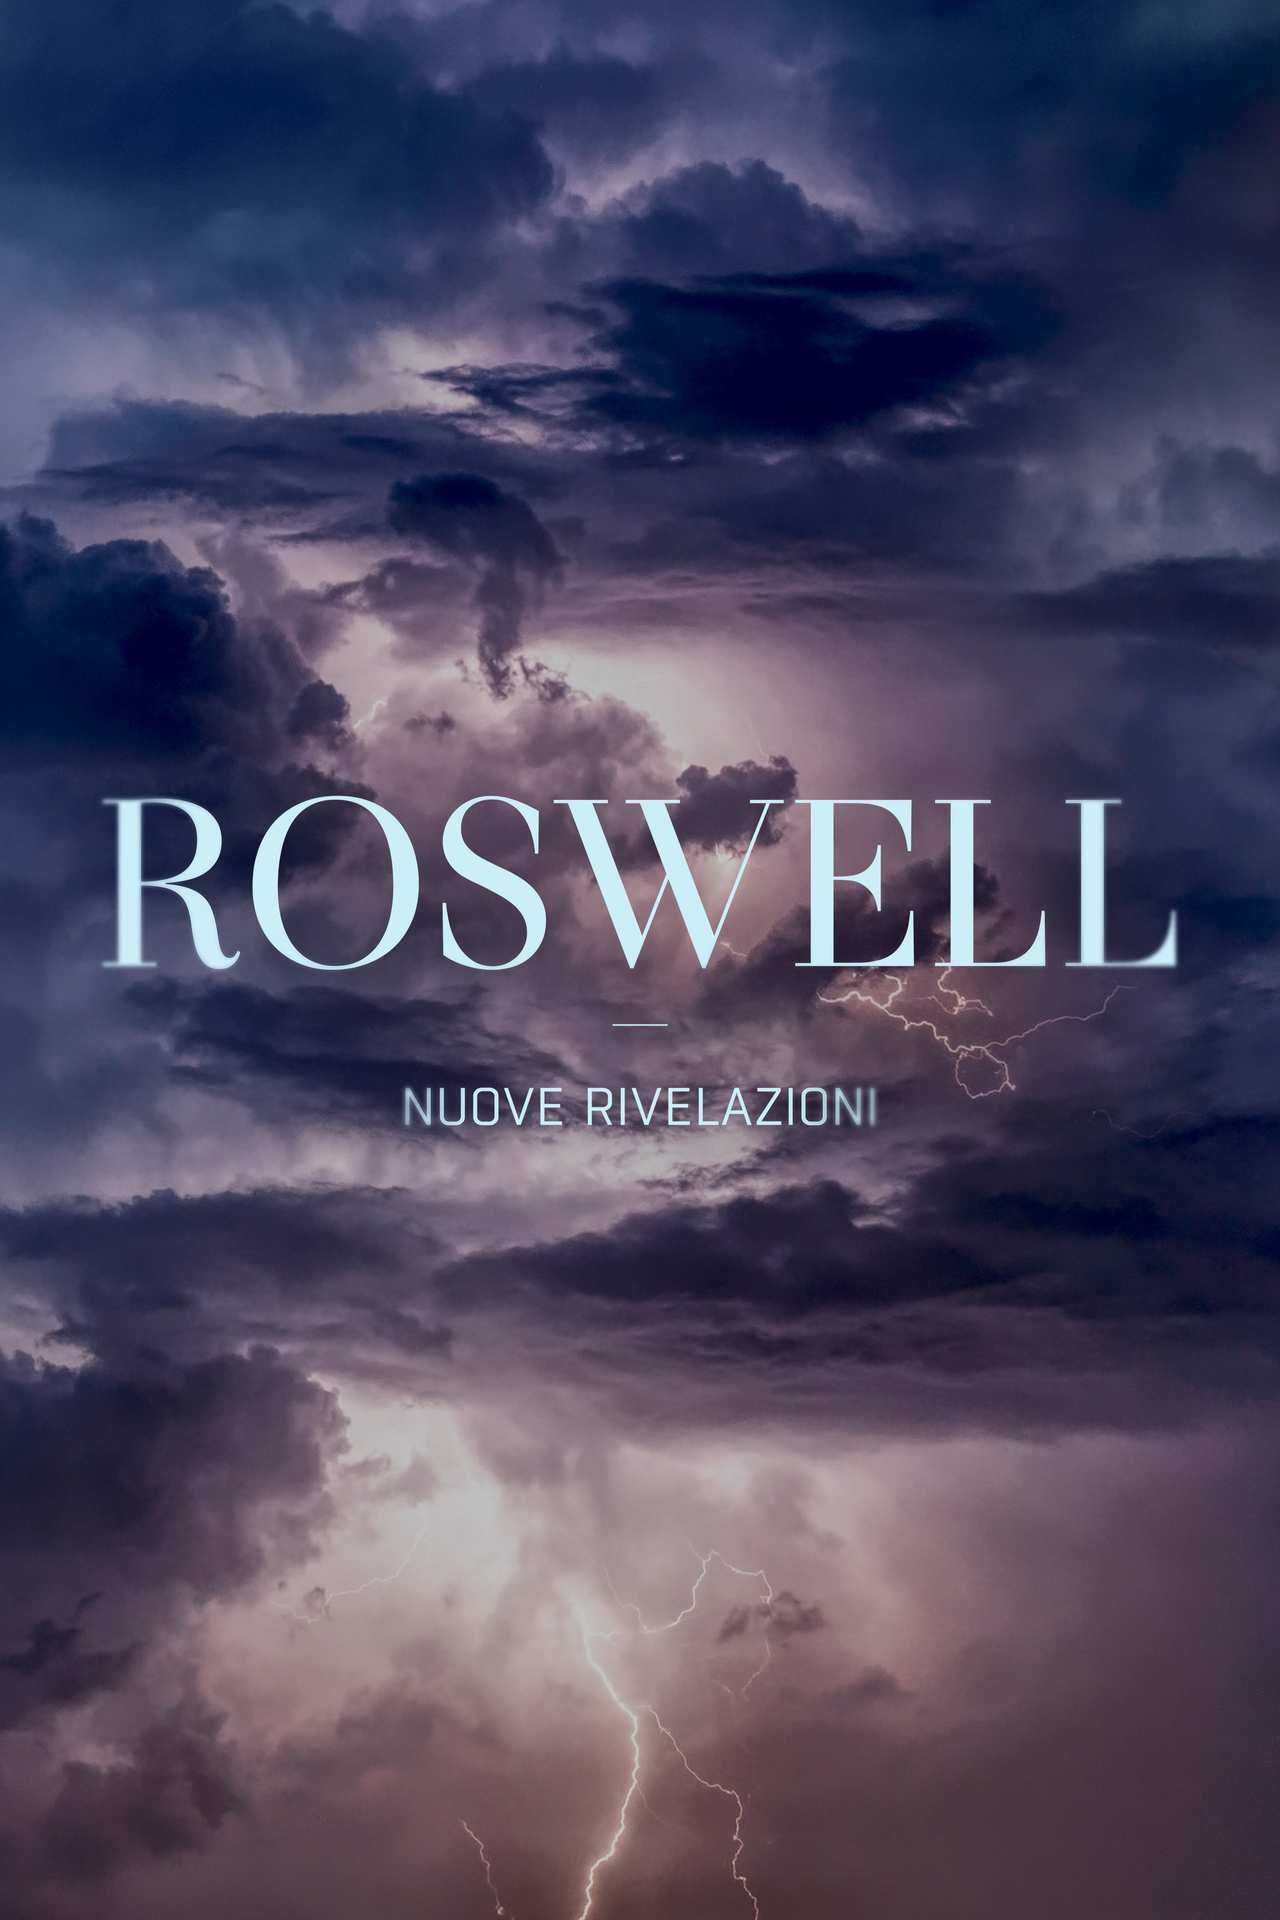 Roswell - Nuove rivelazioni in streaming